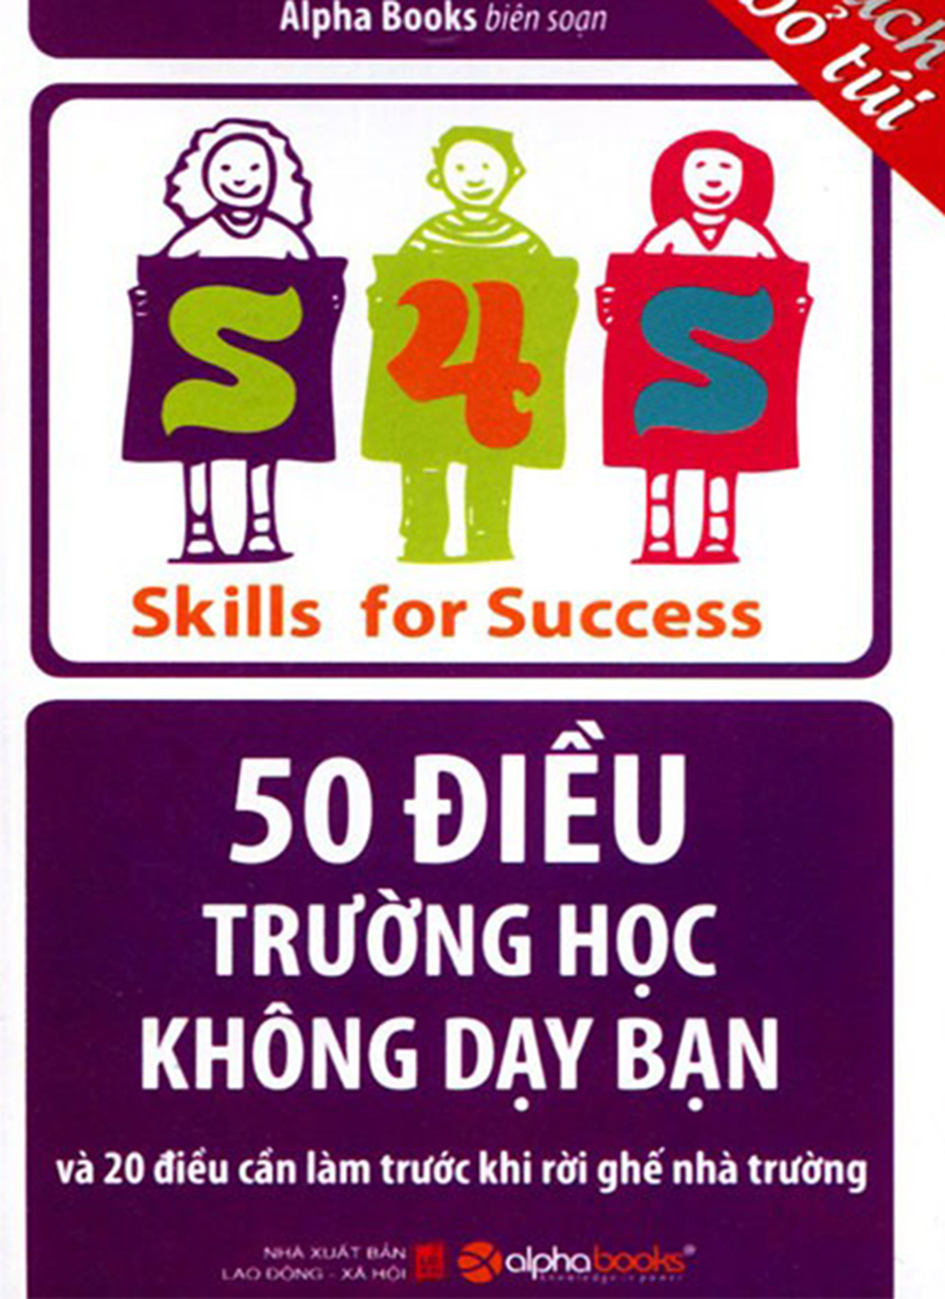 50 dieu truong hoc